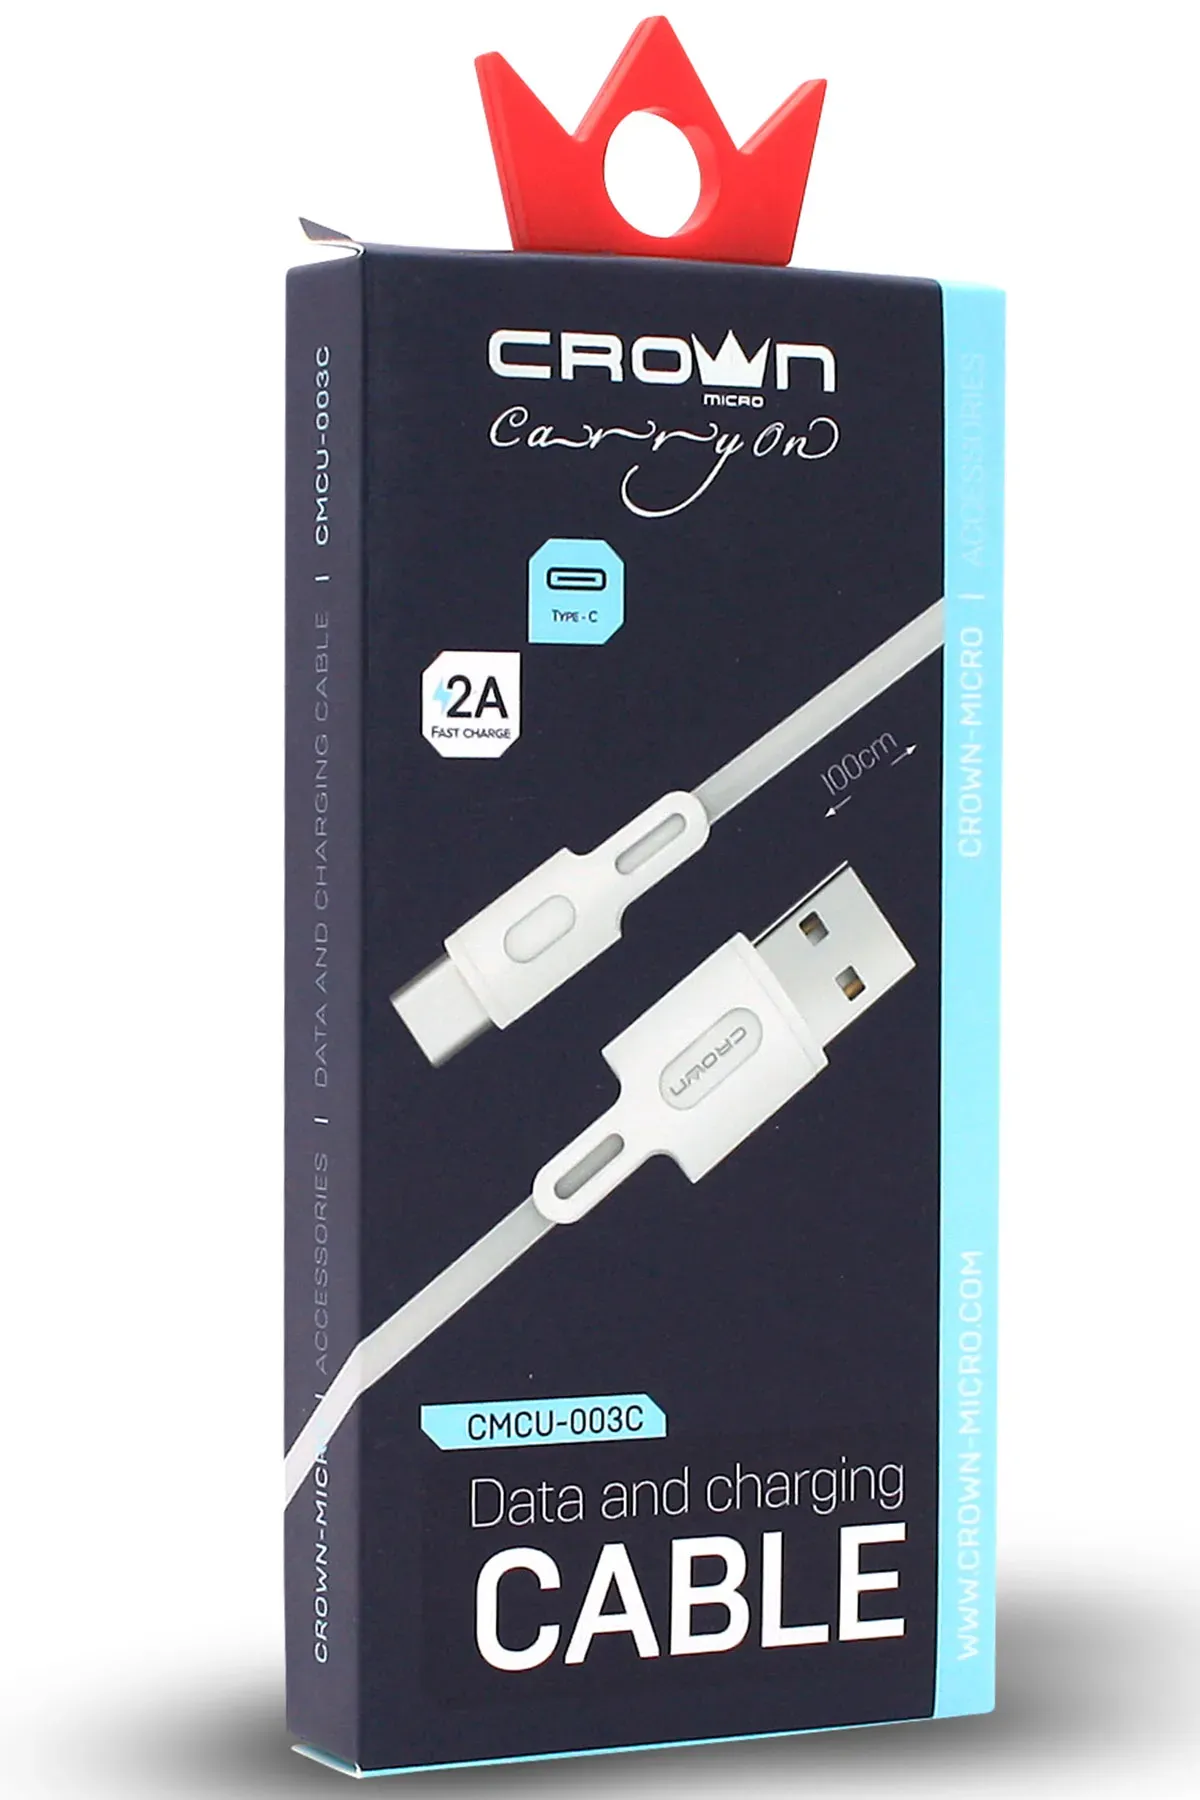 Crown Micro Hızlı Şarj Destekli Type-C Android Kablo (CMCU-003C)